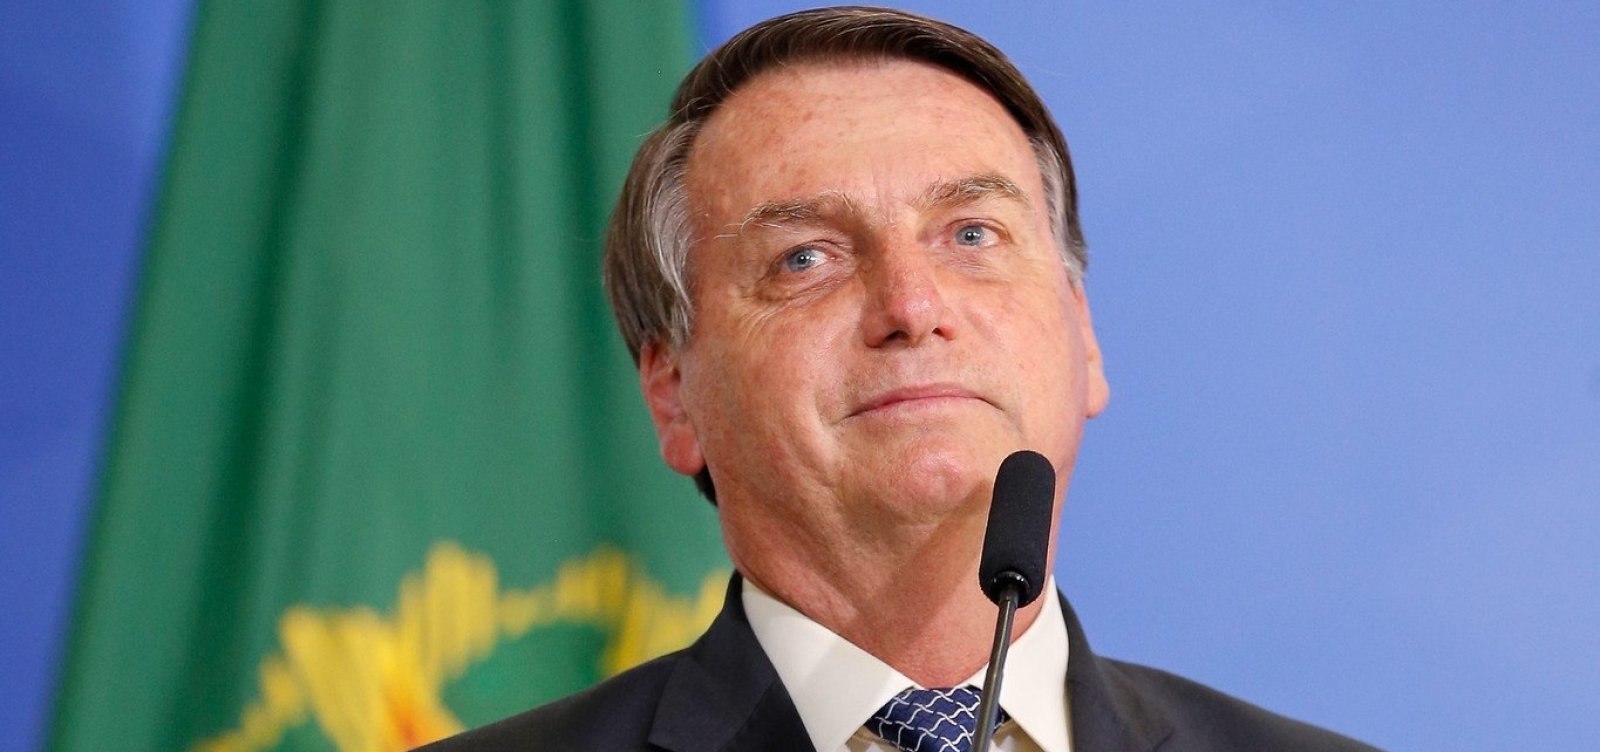 Tribunal dos Povos vai julgar Bolsonaro por crimes contra humanidade